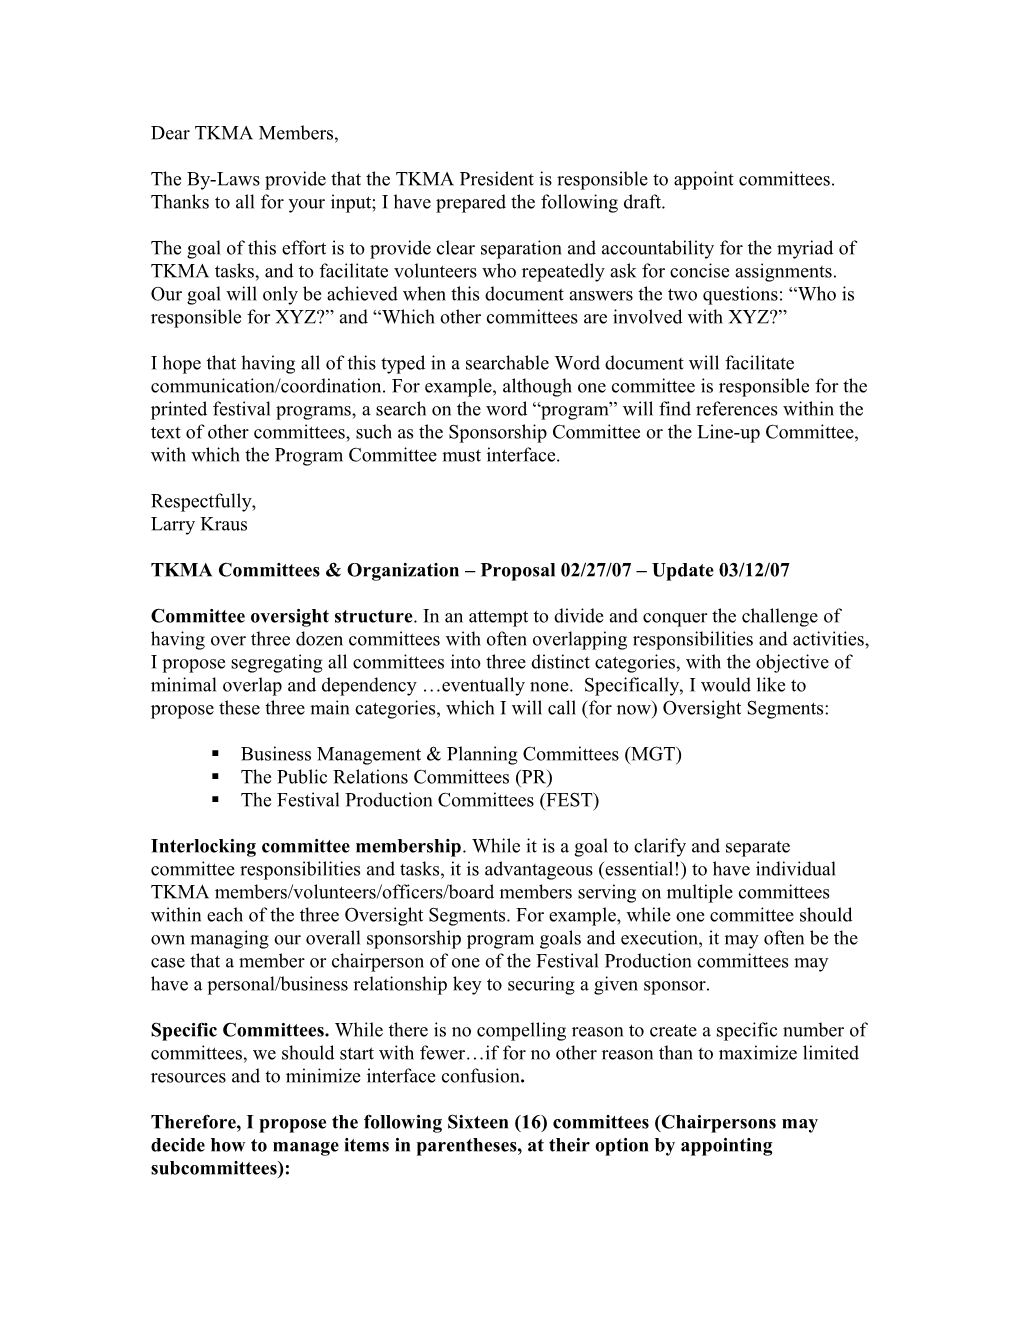 TKMA Committees & Organization Proposal 2/27/2007